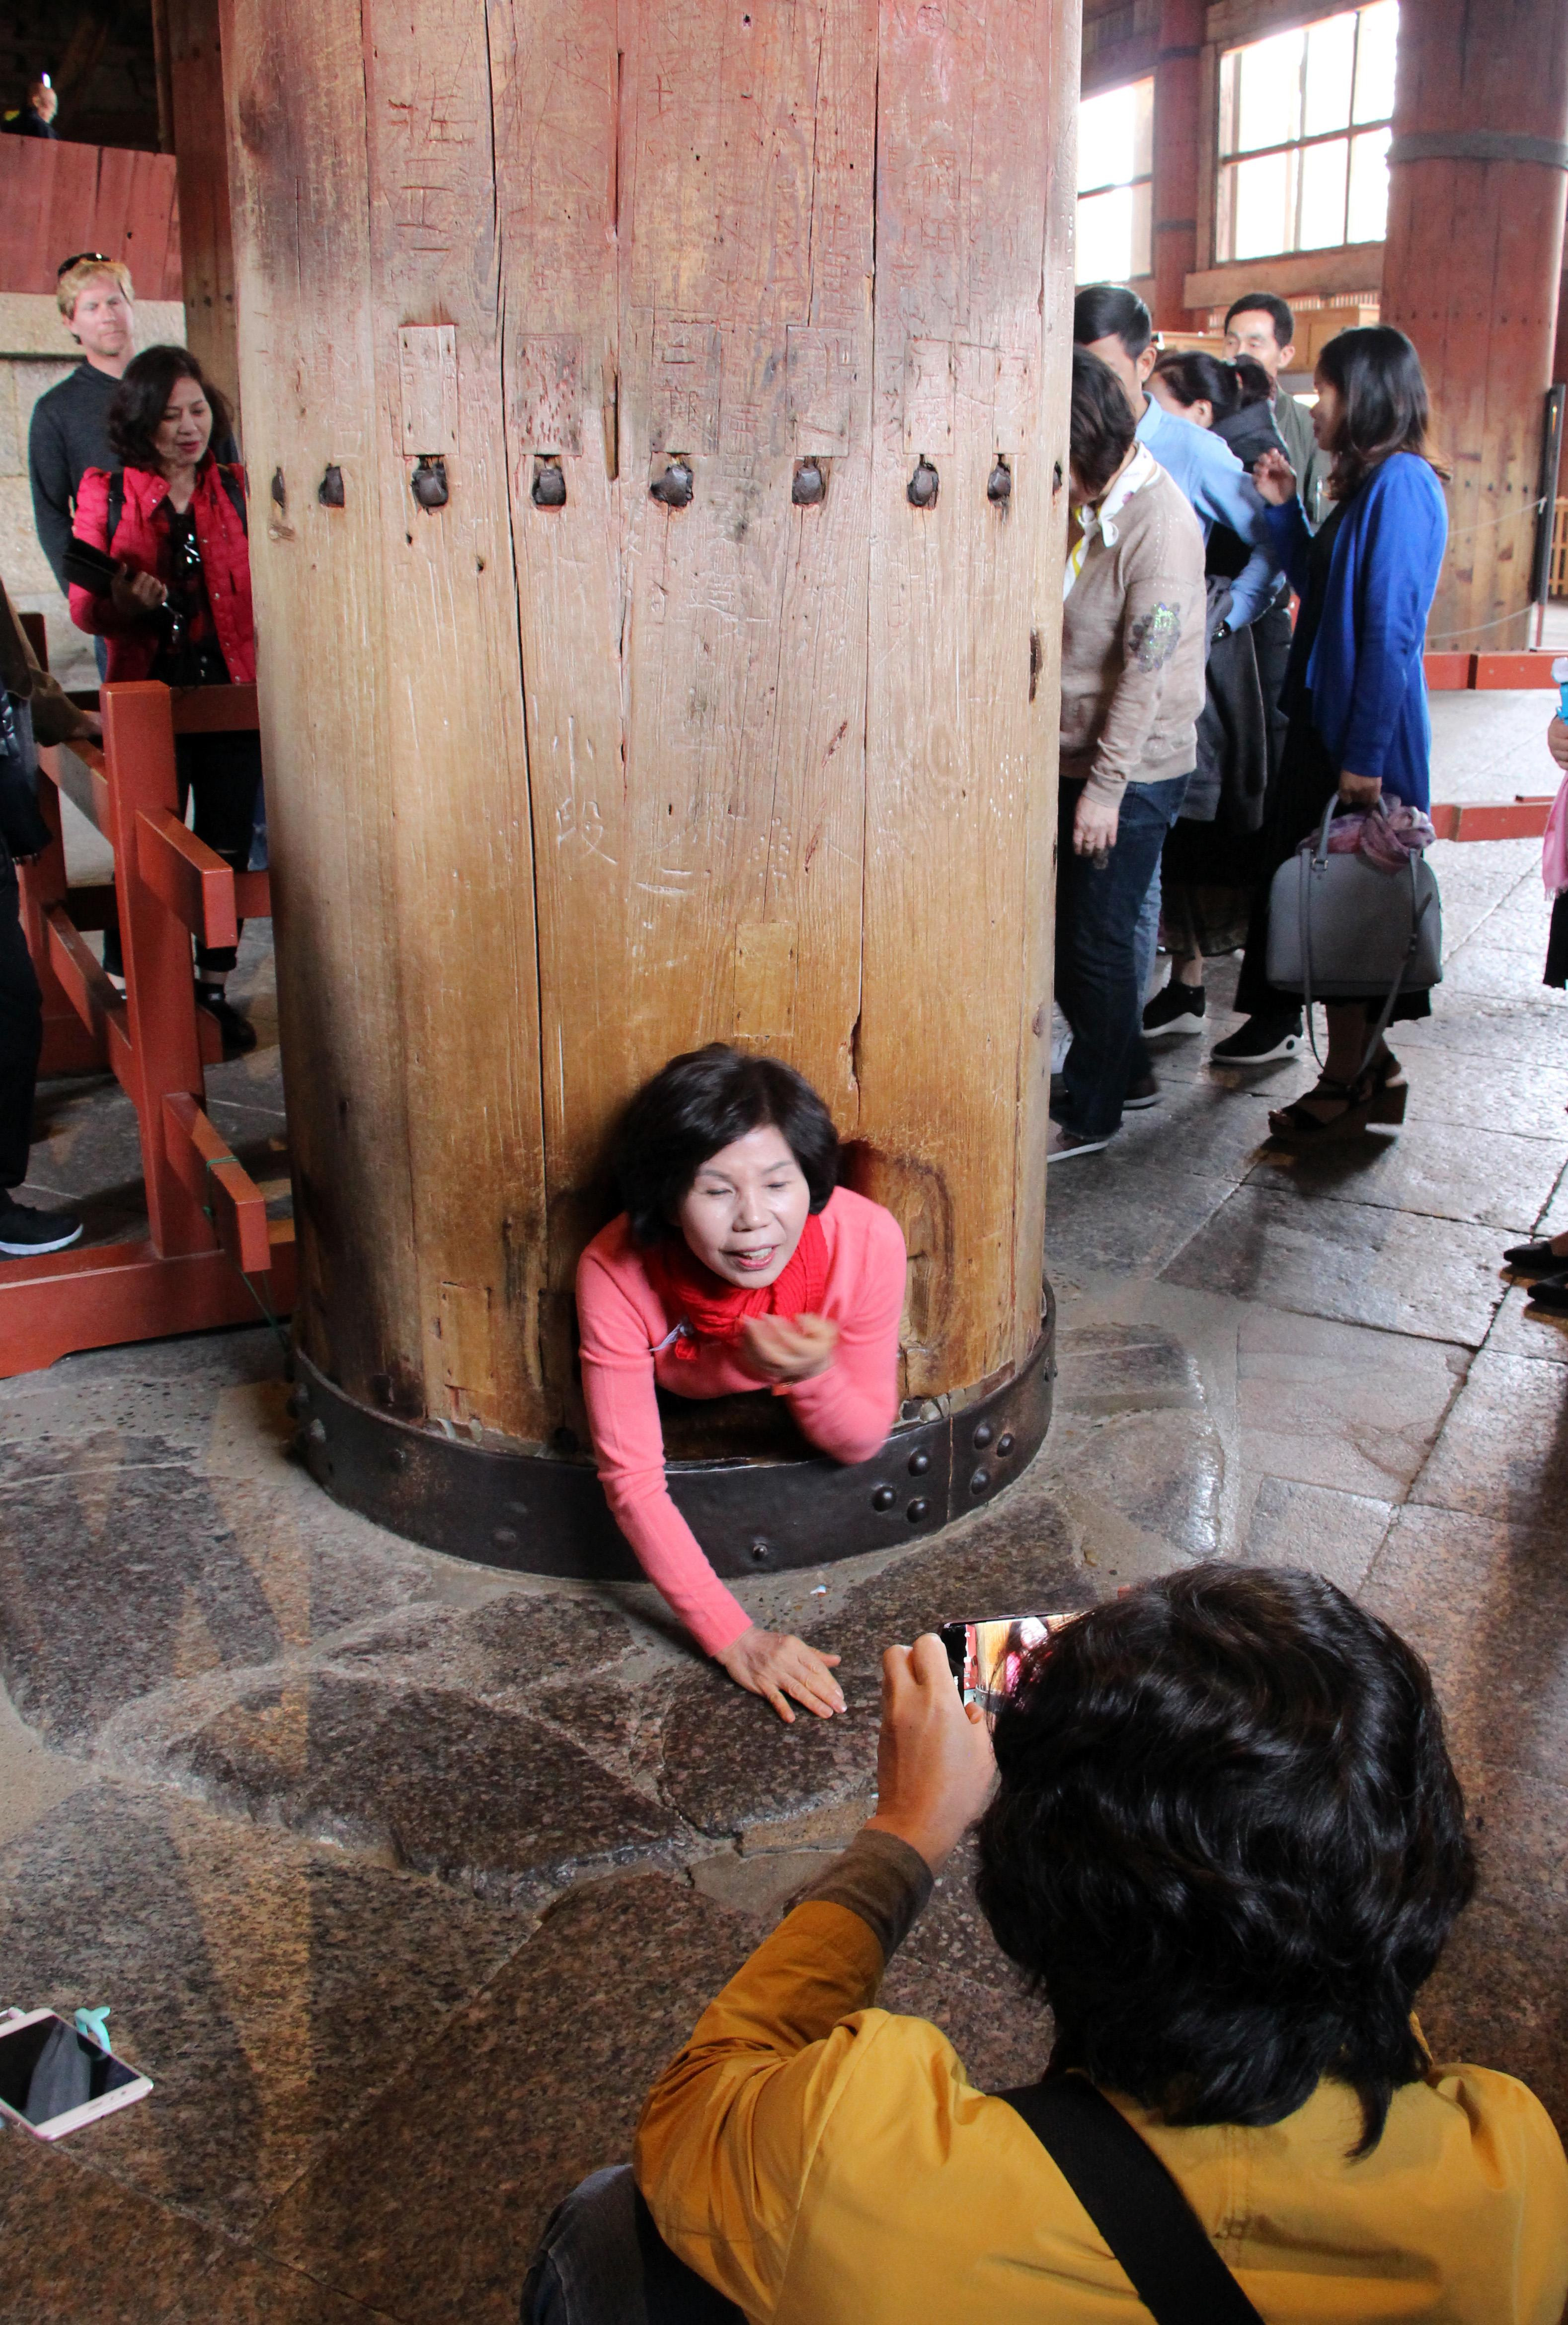 Chùa Todaji có những cây cột gỗ rất lớn, đường kính 1m, cao 20m. Trong Đại Phật điện, có một cây cột có đục một hốc lớn mà tương truyền ai chui qua được đó sẽ có thêm sức khỏe và may mắn trong cuộc sống. Trong ảnh là một du khách nữ đang cố gắng chui qua cây cột. Ảnh: Đào Tuấn